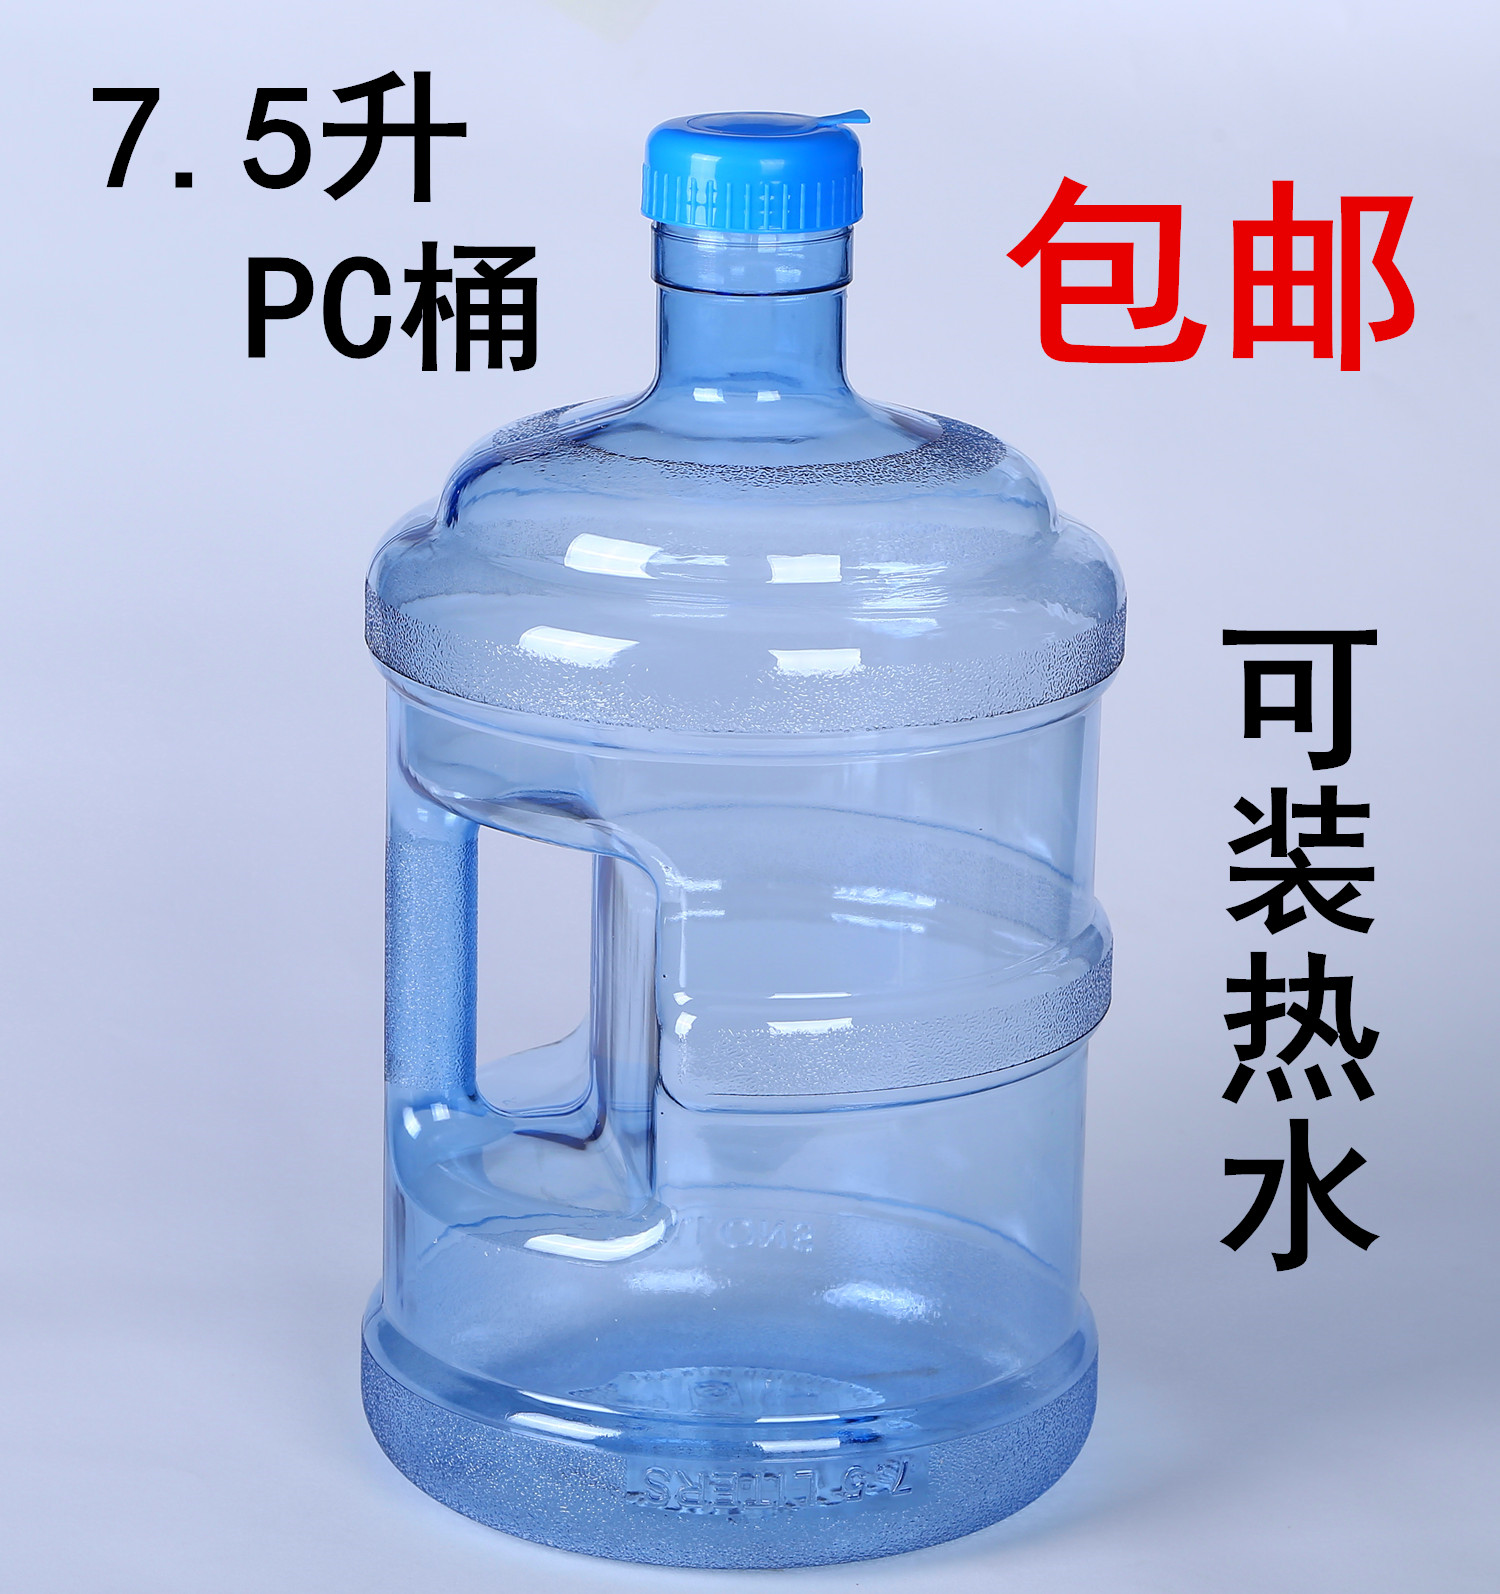 加厚饮水桶7.5升pc 纯净水小桶 型 饮水机水桶 7.5L 包邮